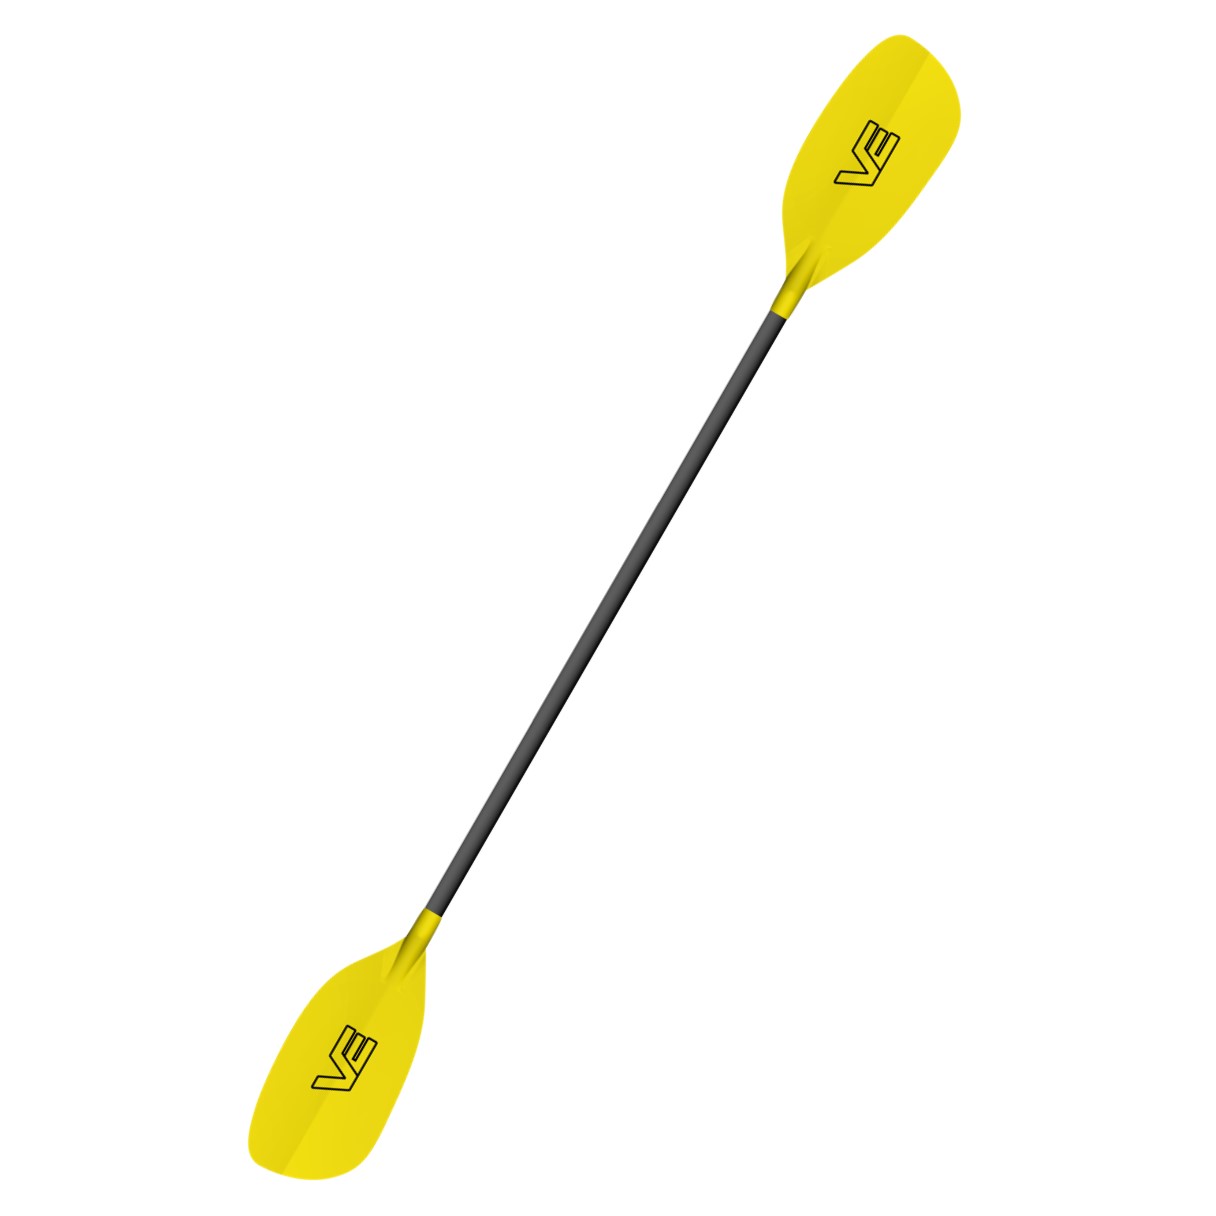 VE Paddles Pro Glass - Glass Shaft Paddle - Yellow 